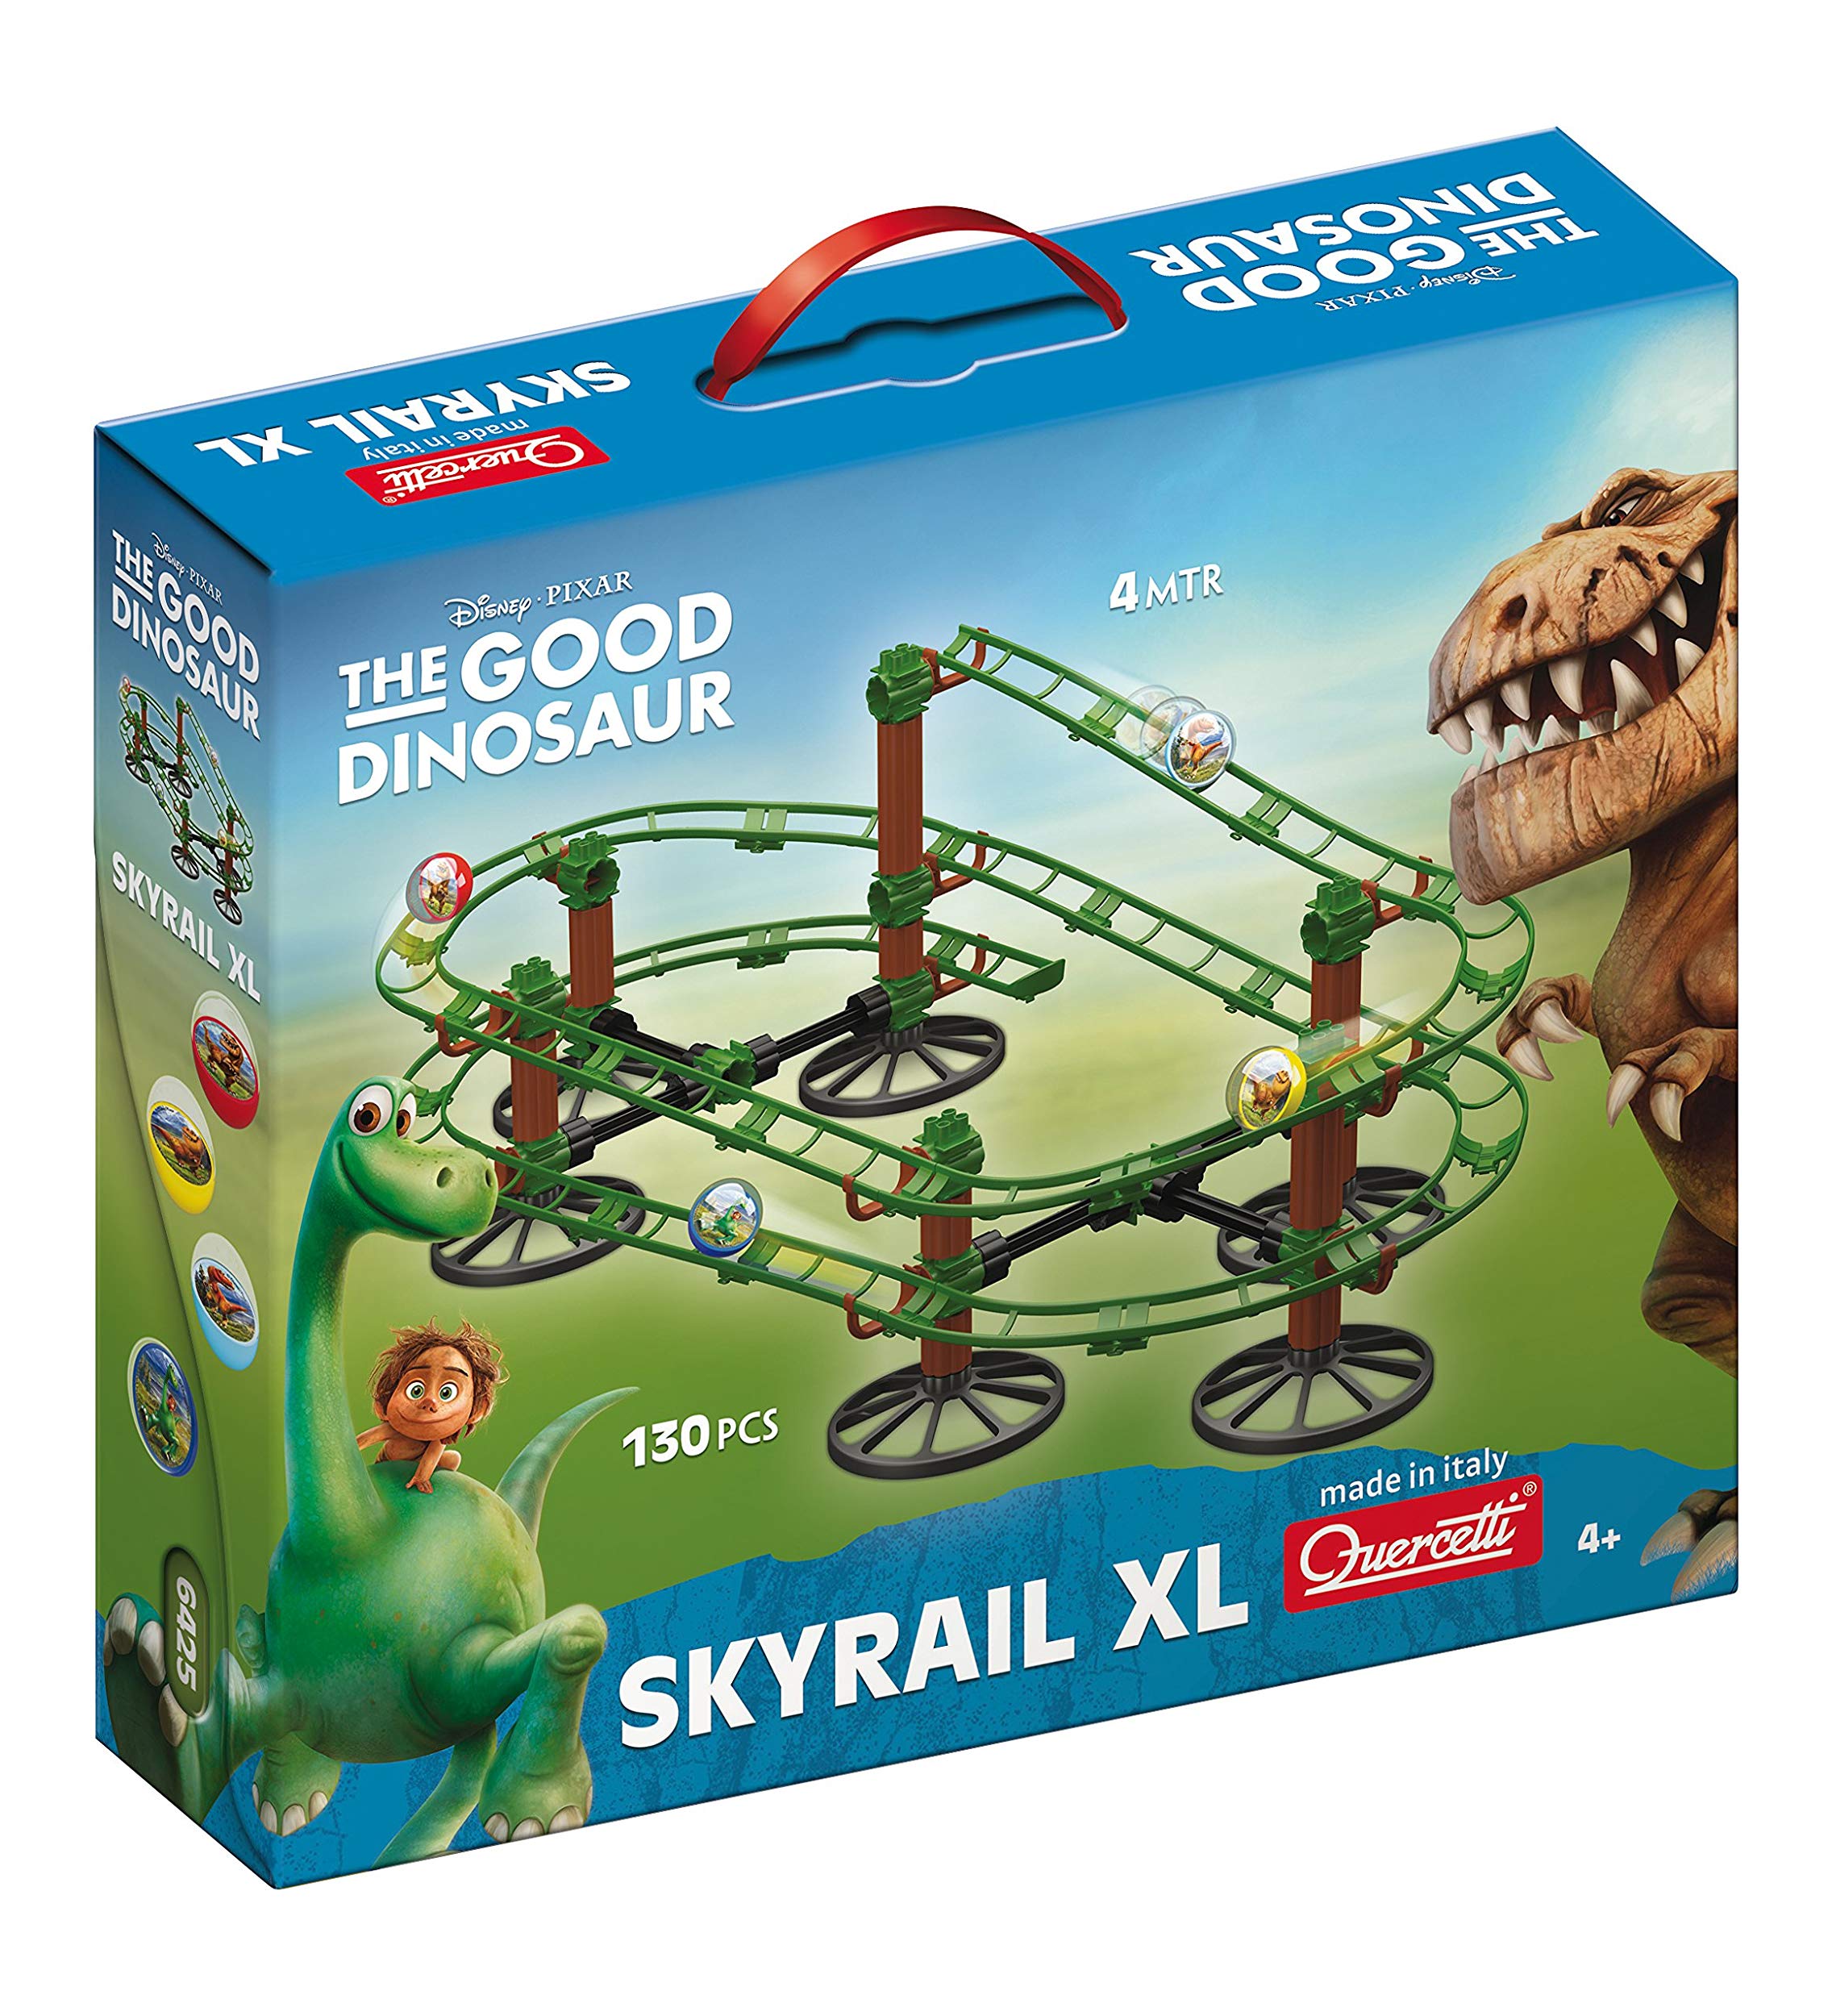 Skyrail Dinosaurs